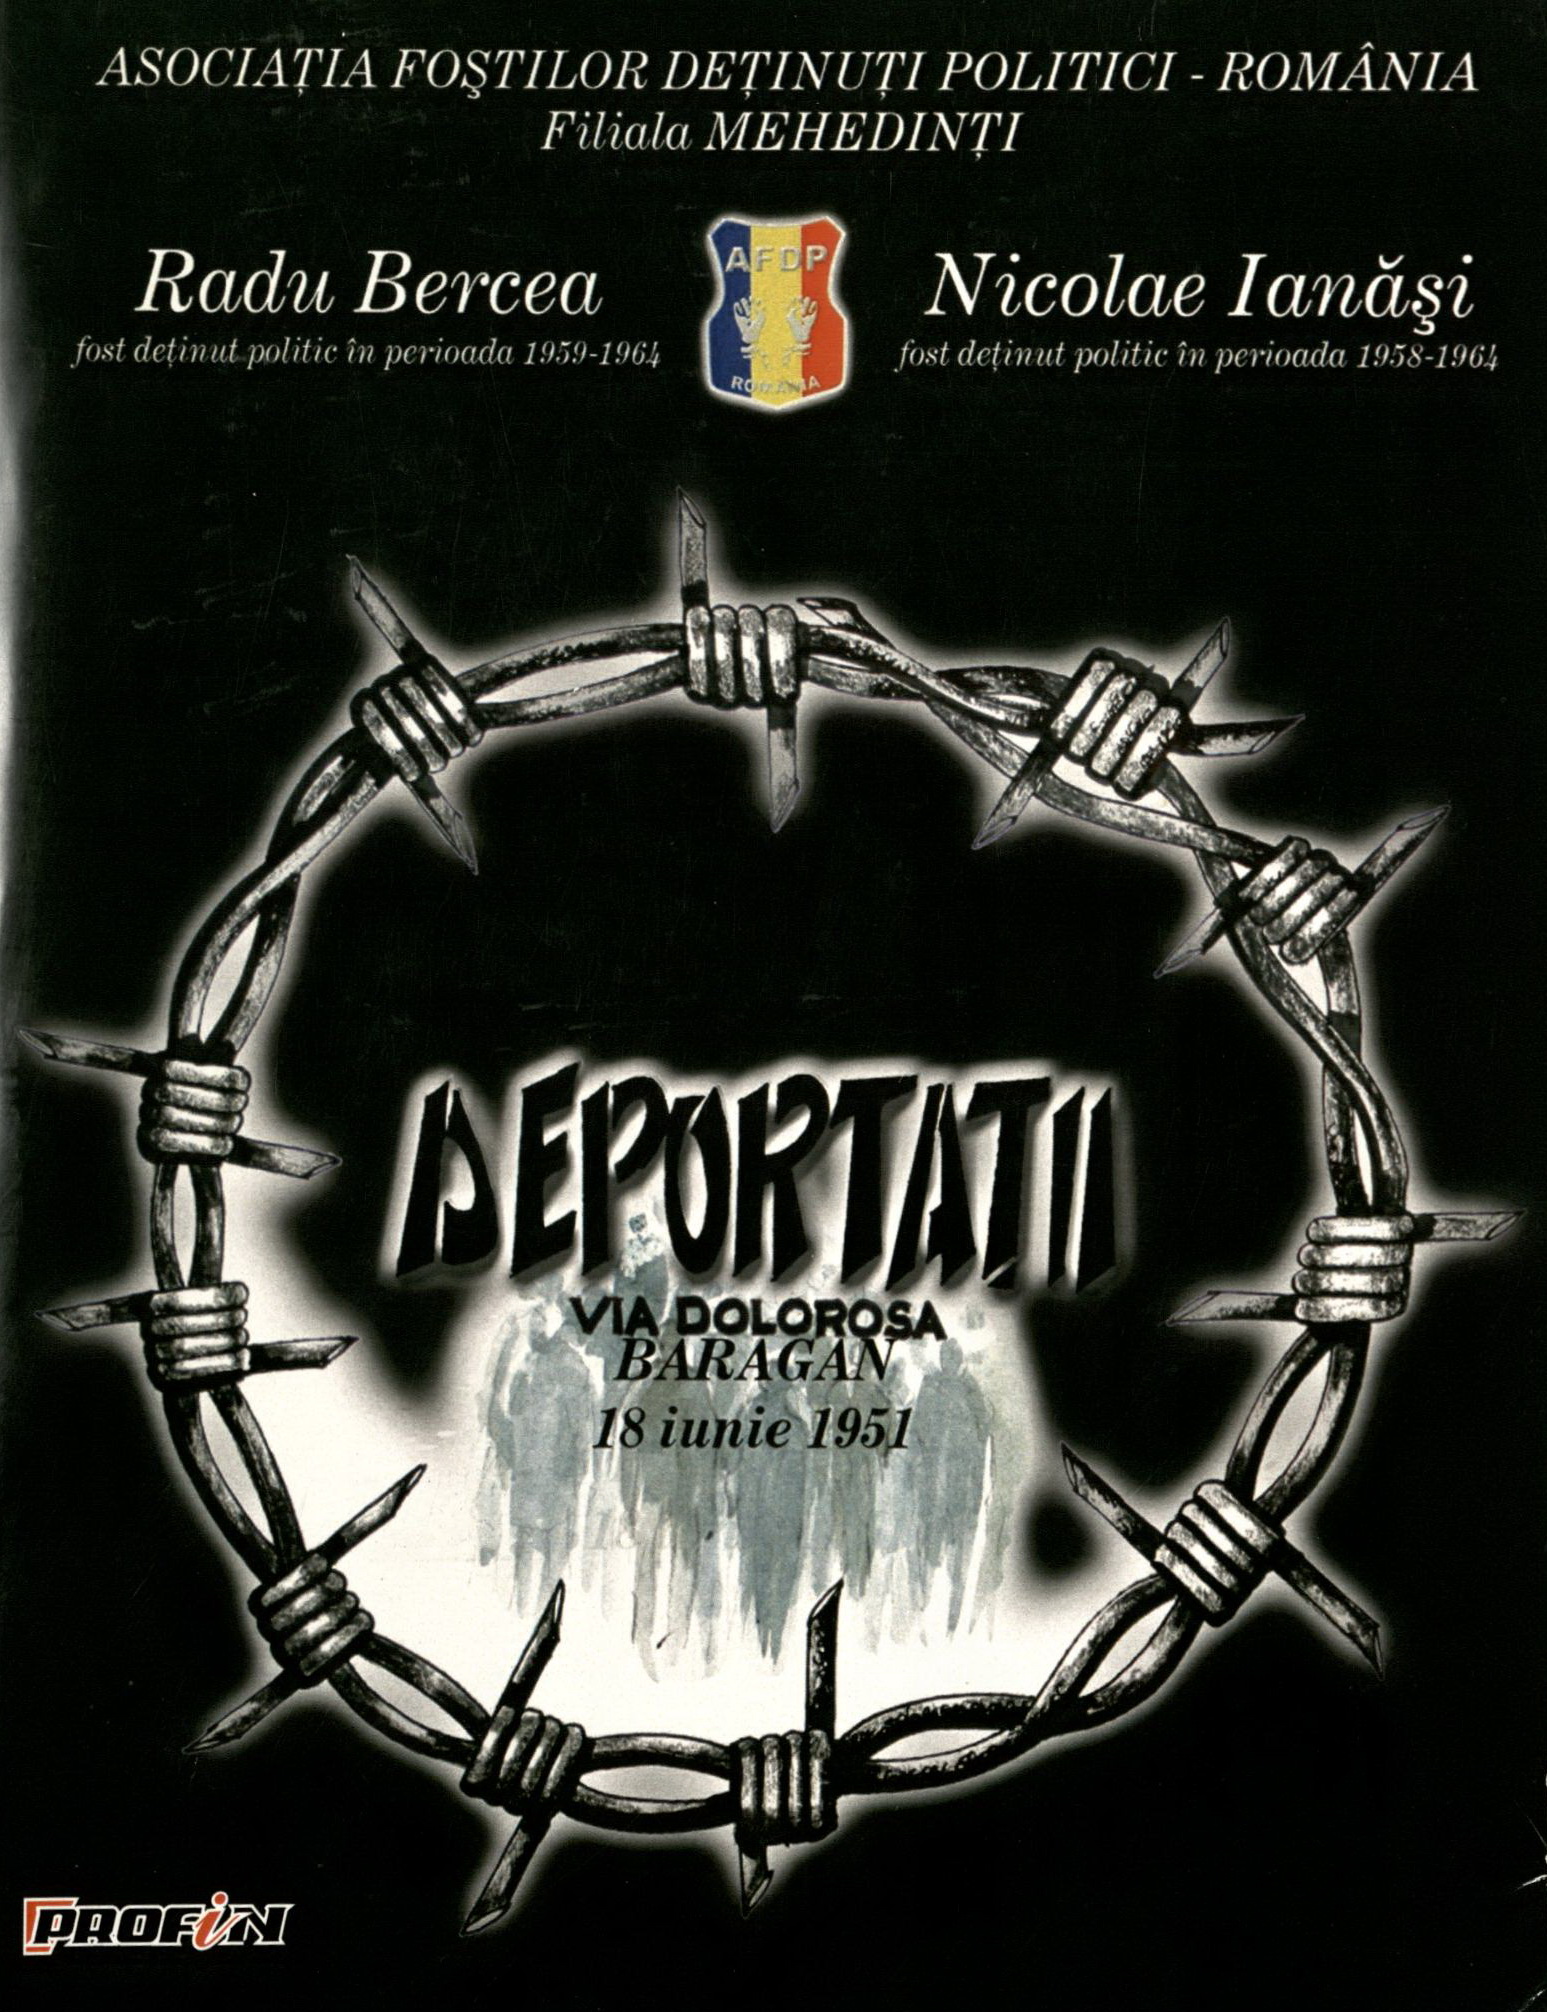 Copertă: 2010 - Radu Bercea, Nicolae Ianăși - Deportații / Via Dolorosa Bărăgan - 18 iunie 1951